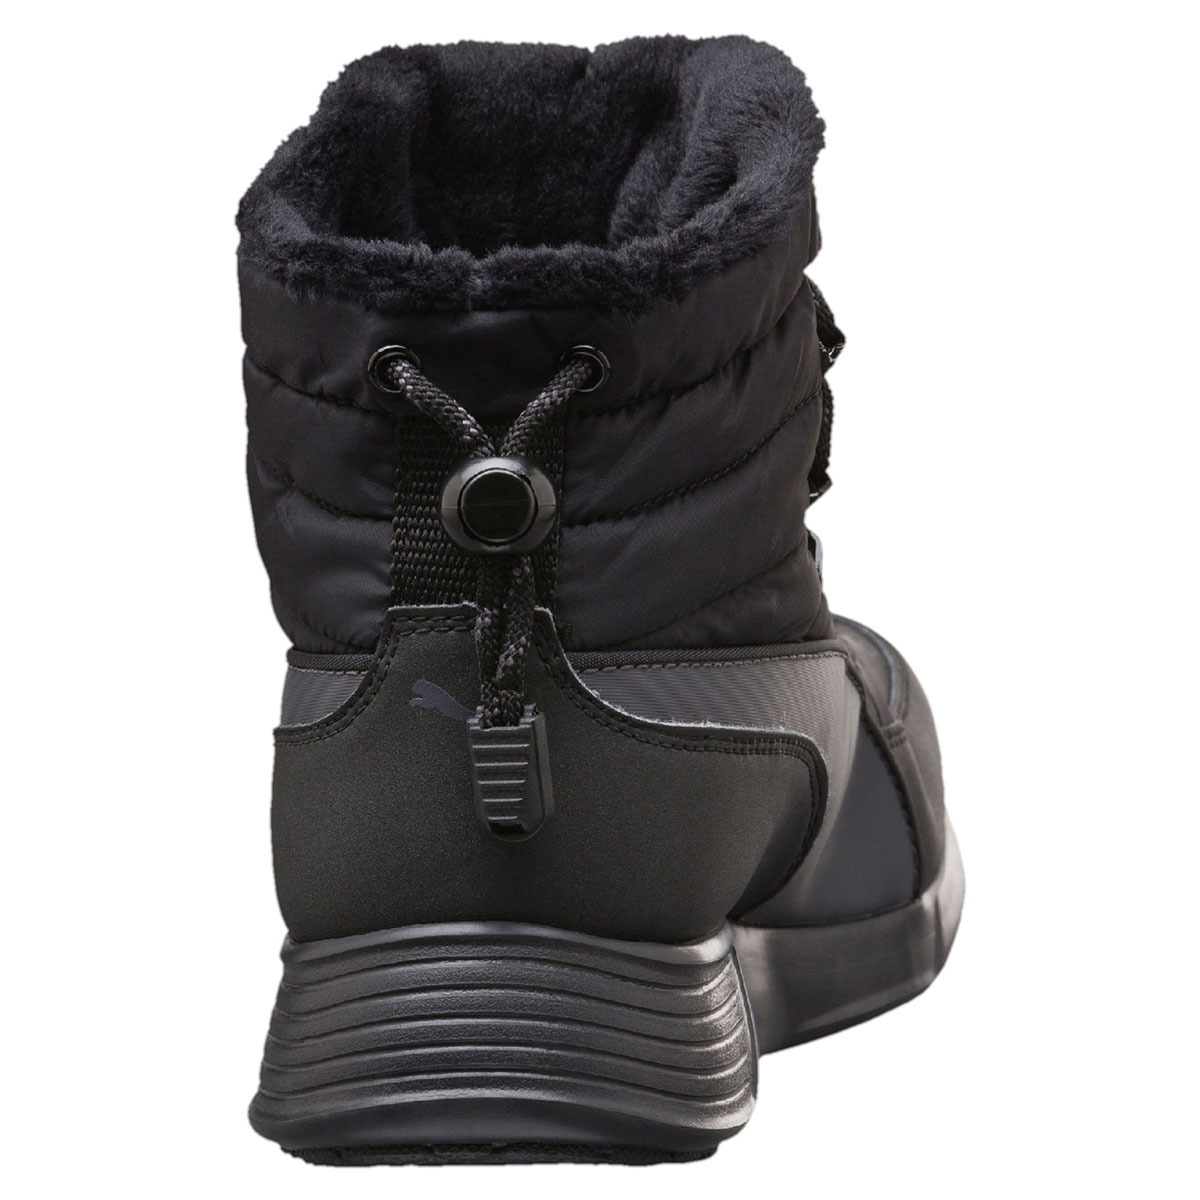 Puma ST Winter Boot black  361216-01